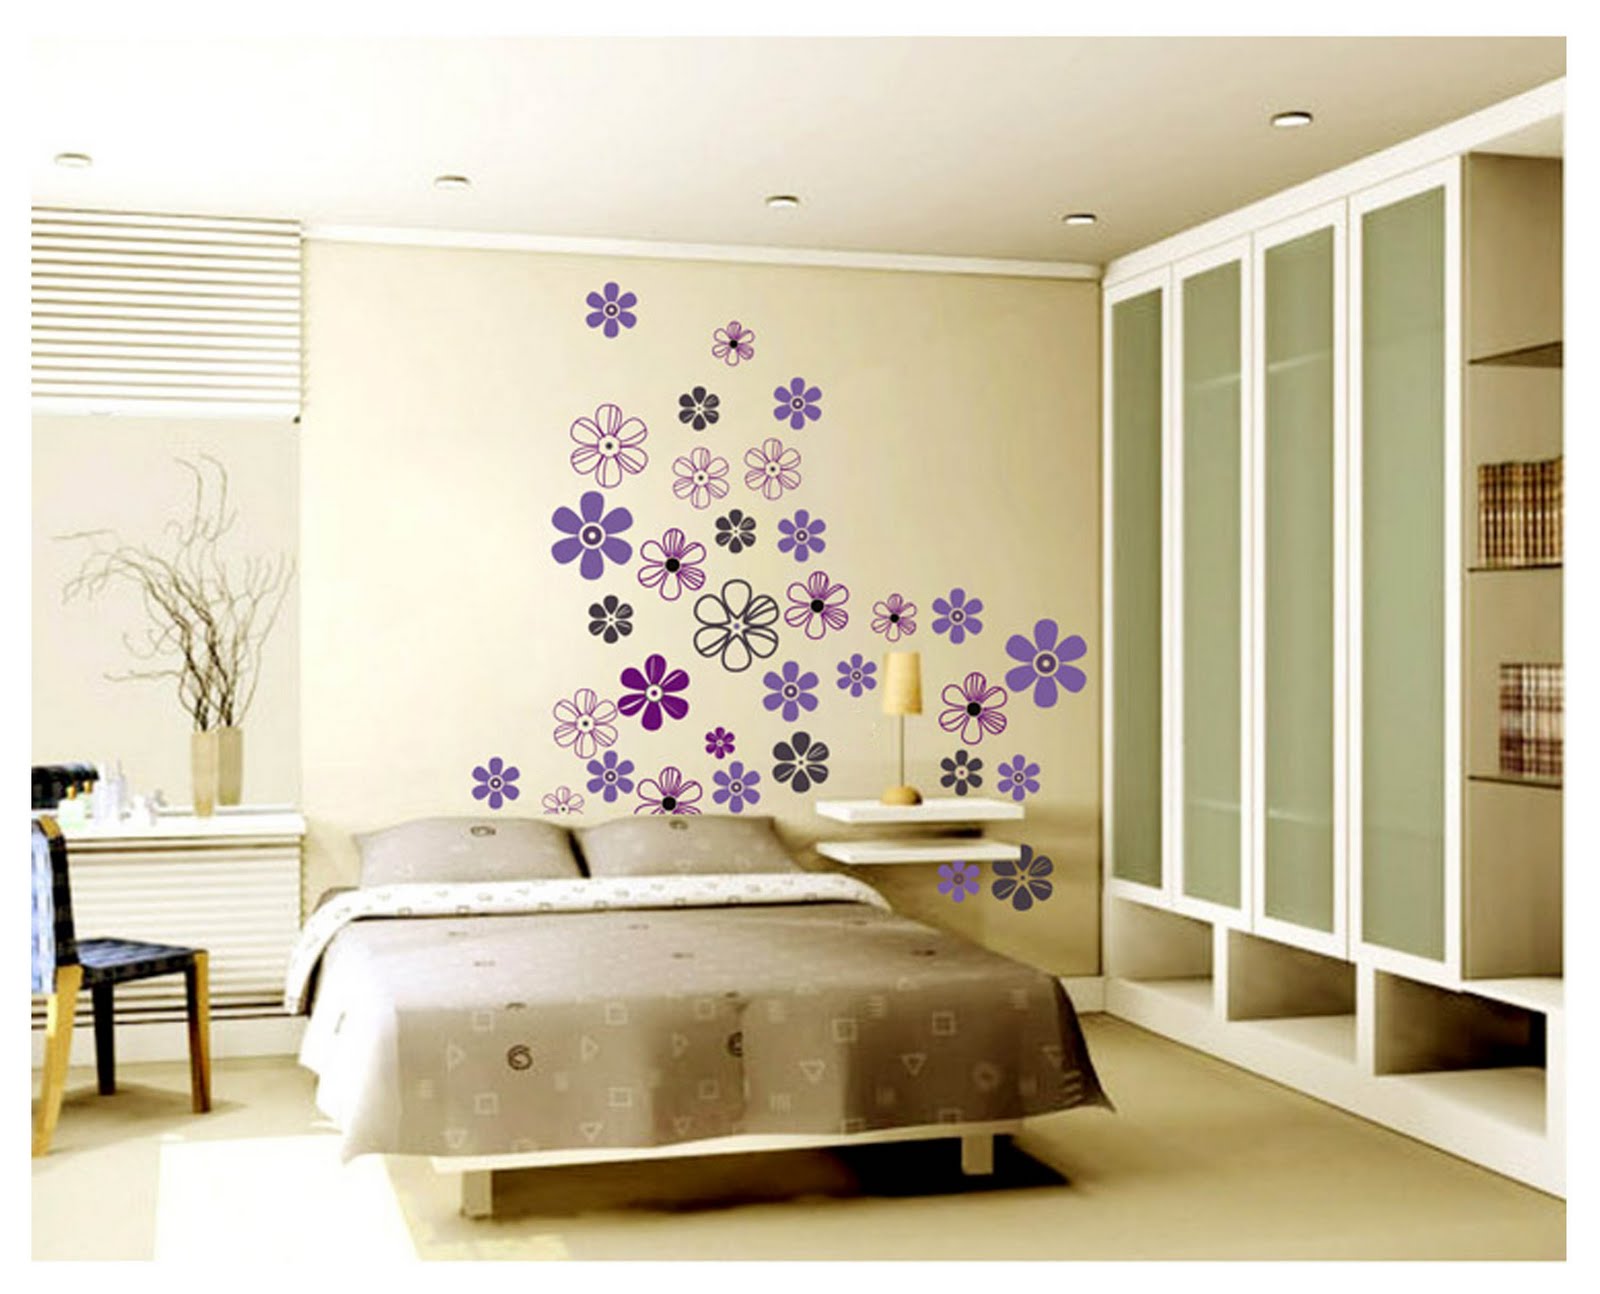 Wallpaper Designs For Living Room In Ghana